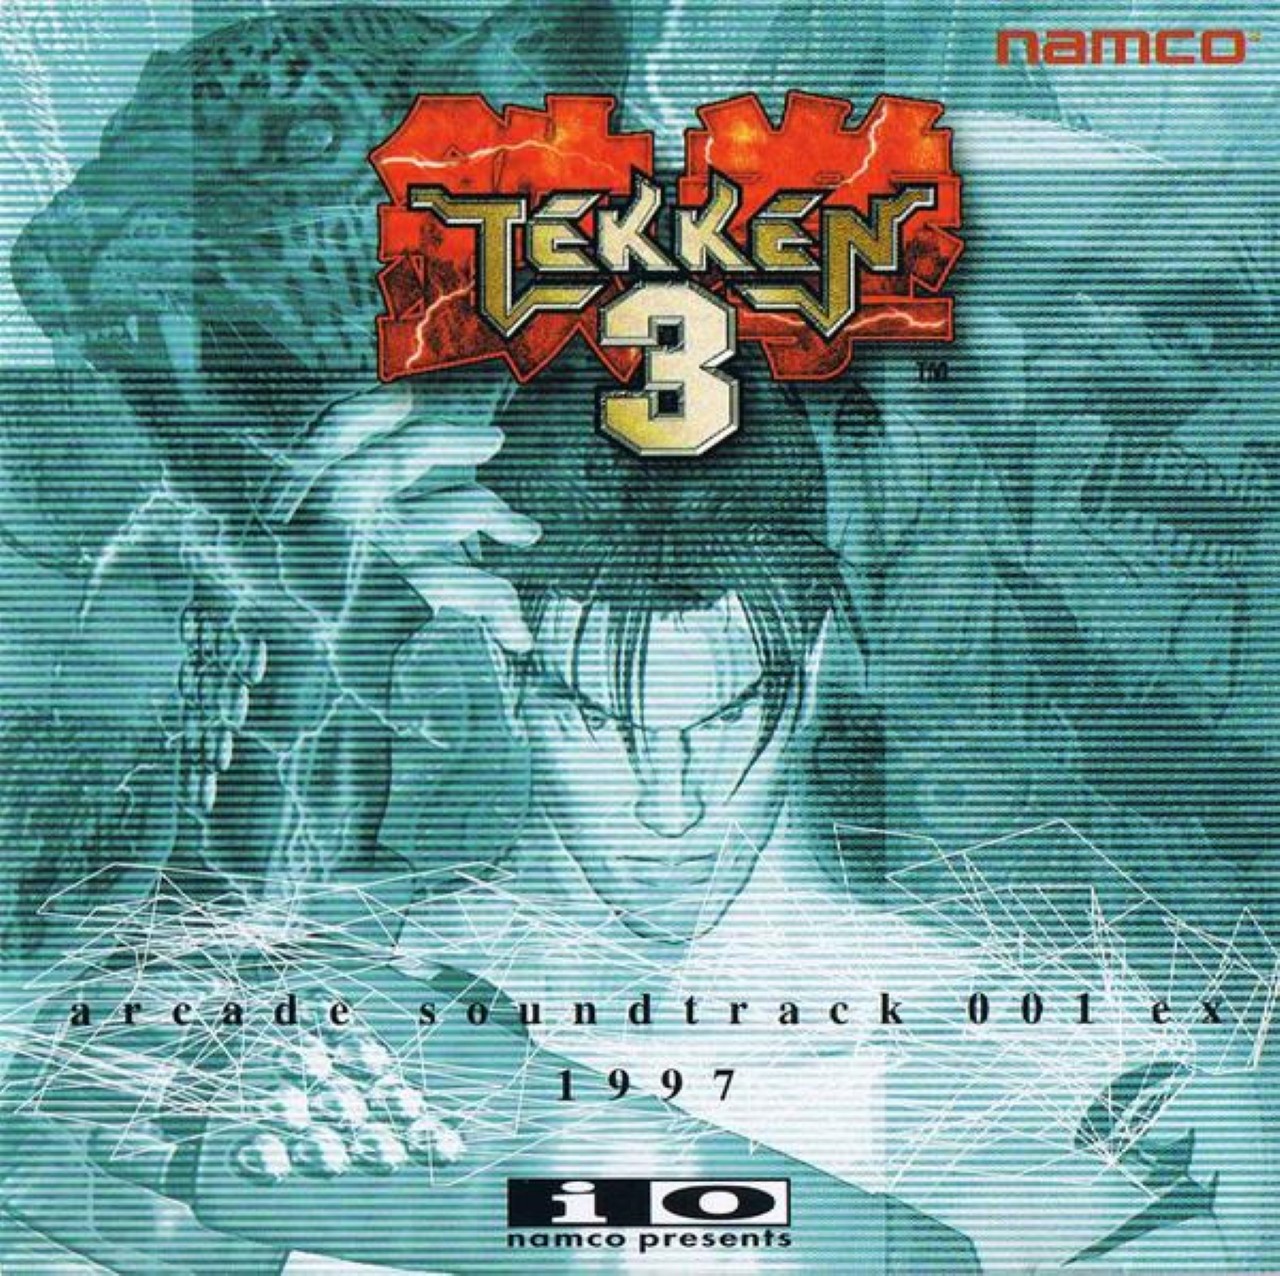 Hãy thưởng thức băng âm thanh TEKKEN 3 arcade tuyệt vời nhất trực tiếp từ trò chơi kinh điển này. Cảm giác nghe nhạc cực đã khiến bạn sẽ muốn đắm chìm trong không gian âm thanh của Tekken